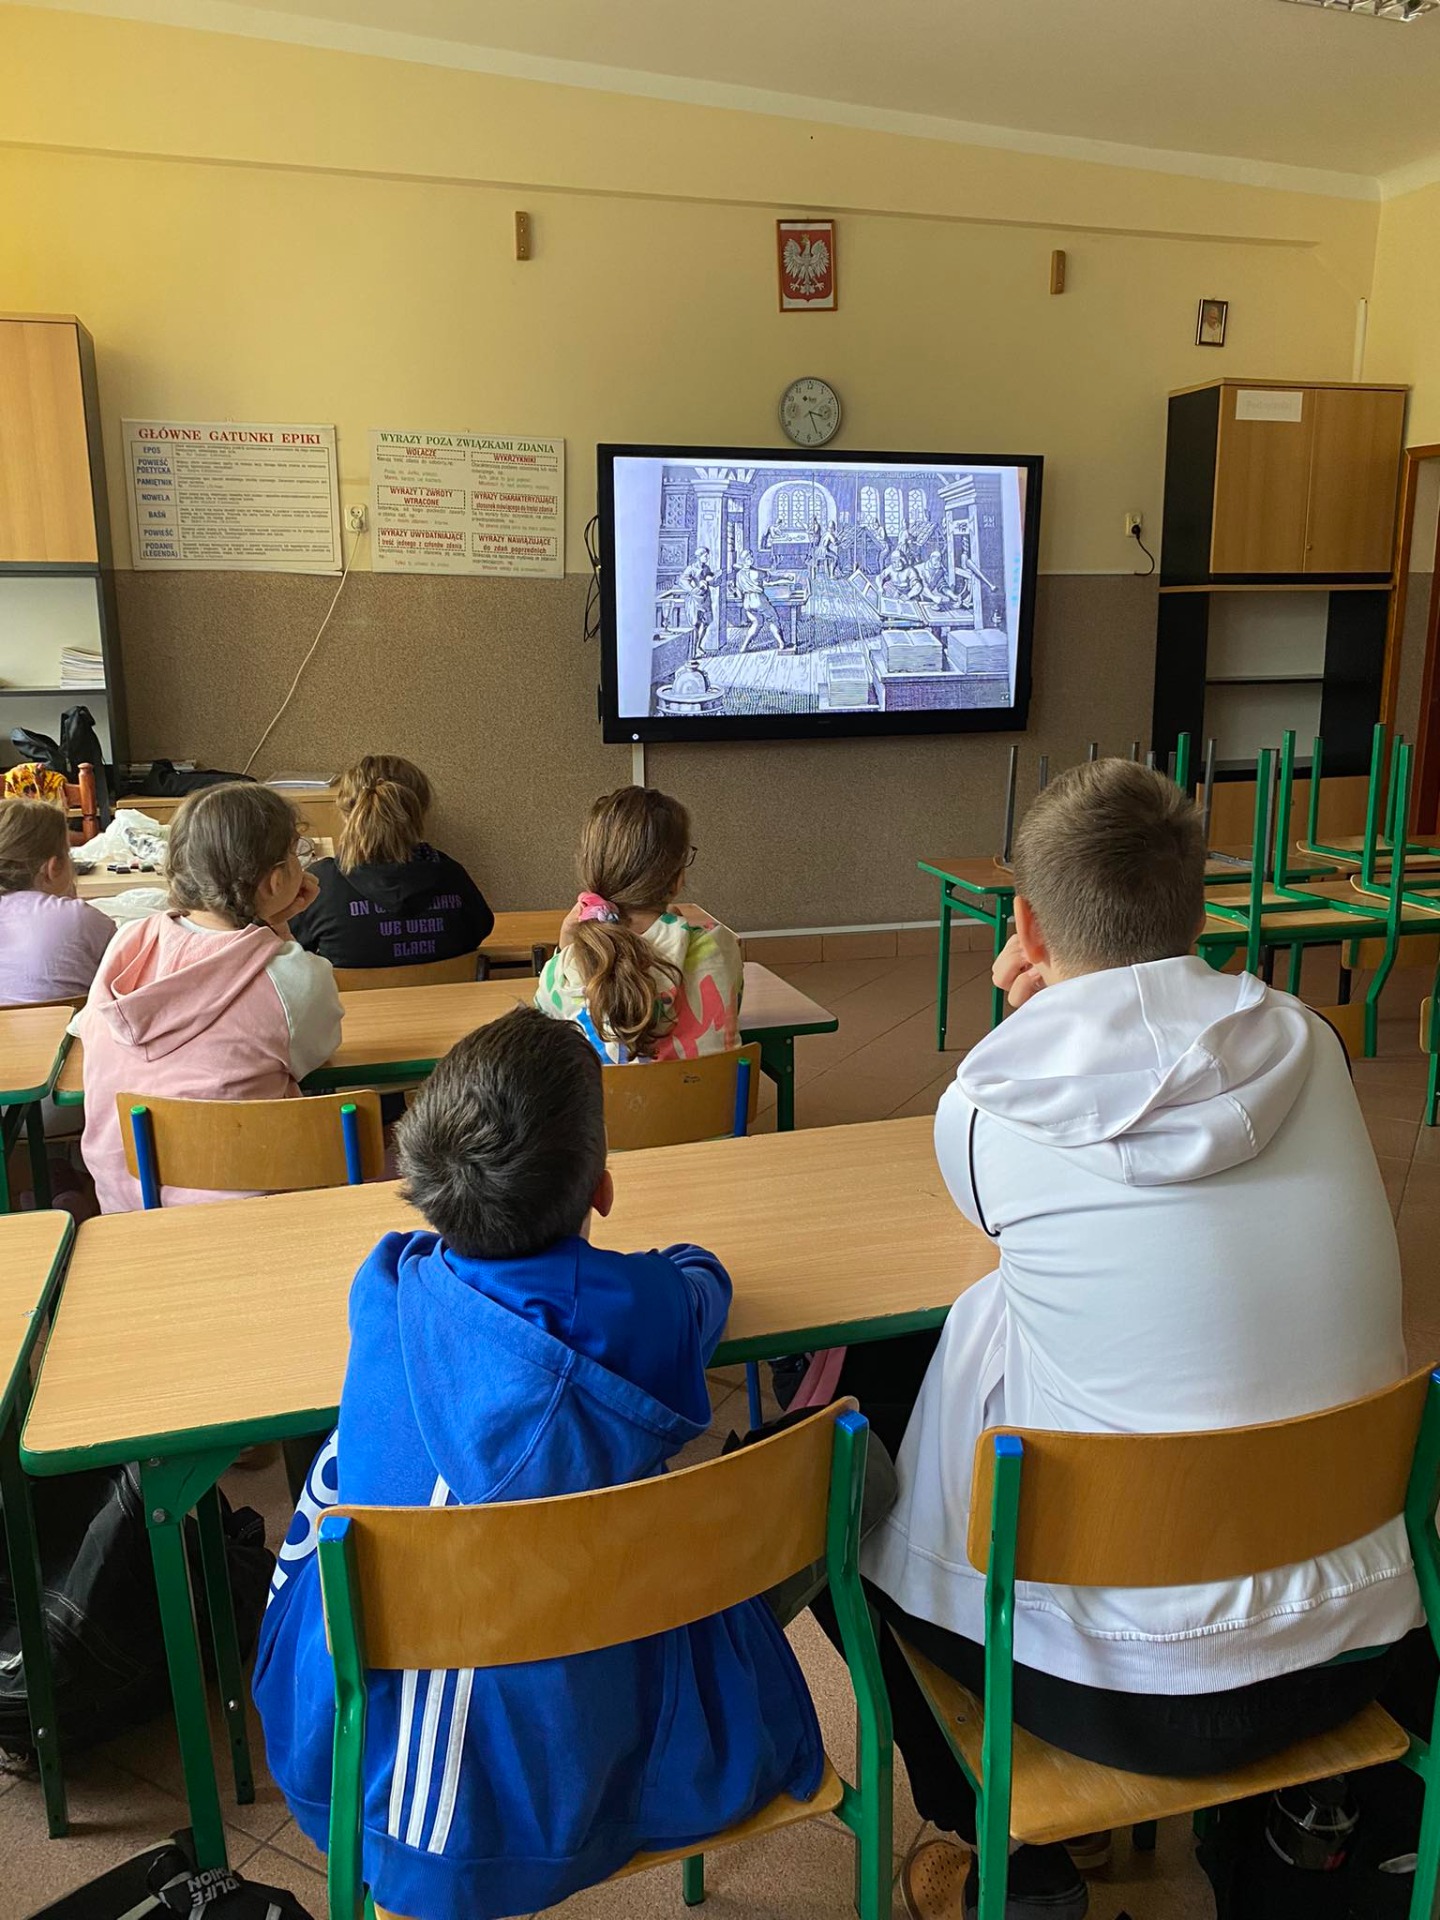 Uczniowie oglądają film o Janie Gutenbergu na tablicy interaktywnej